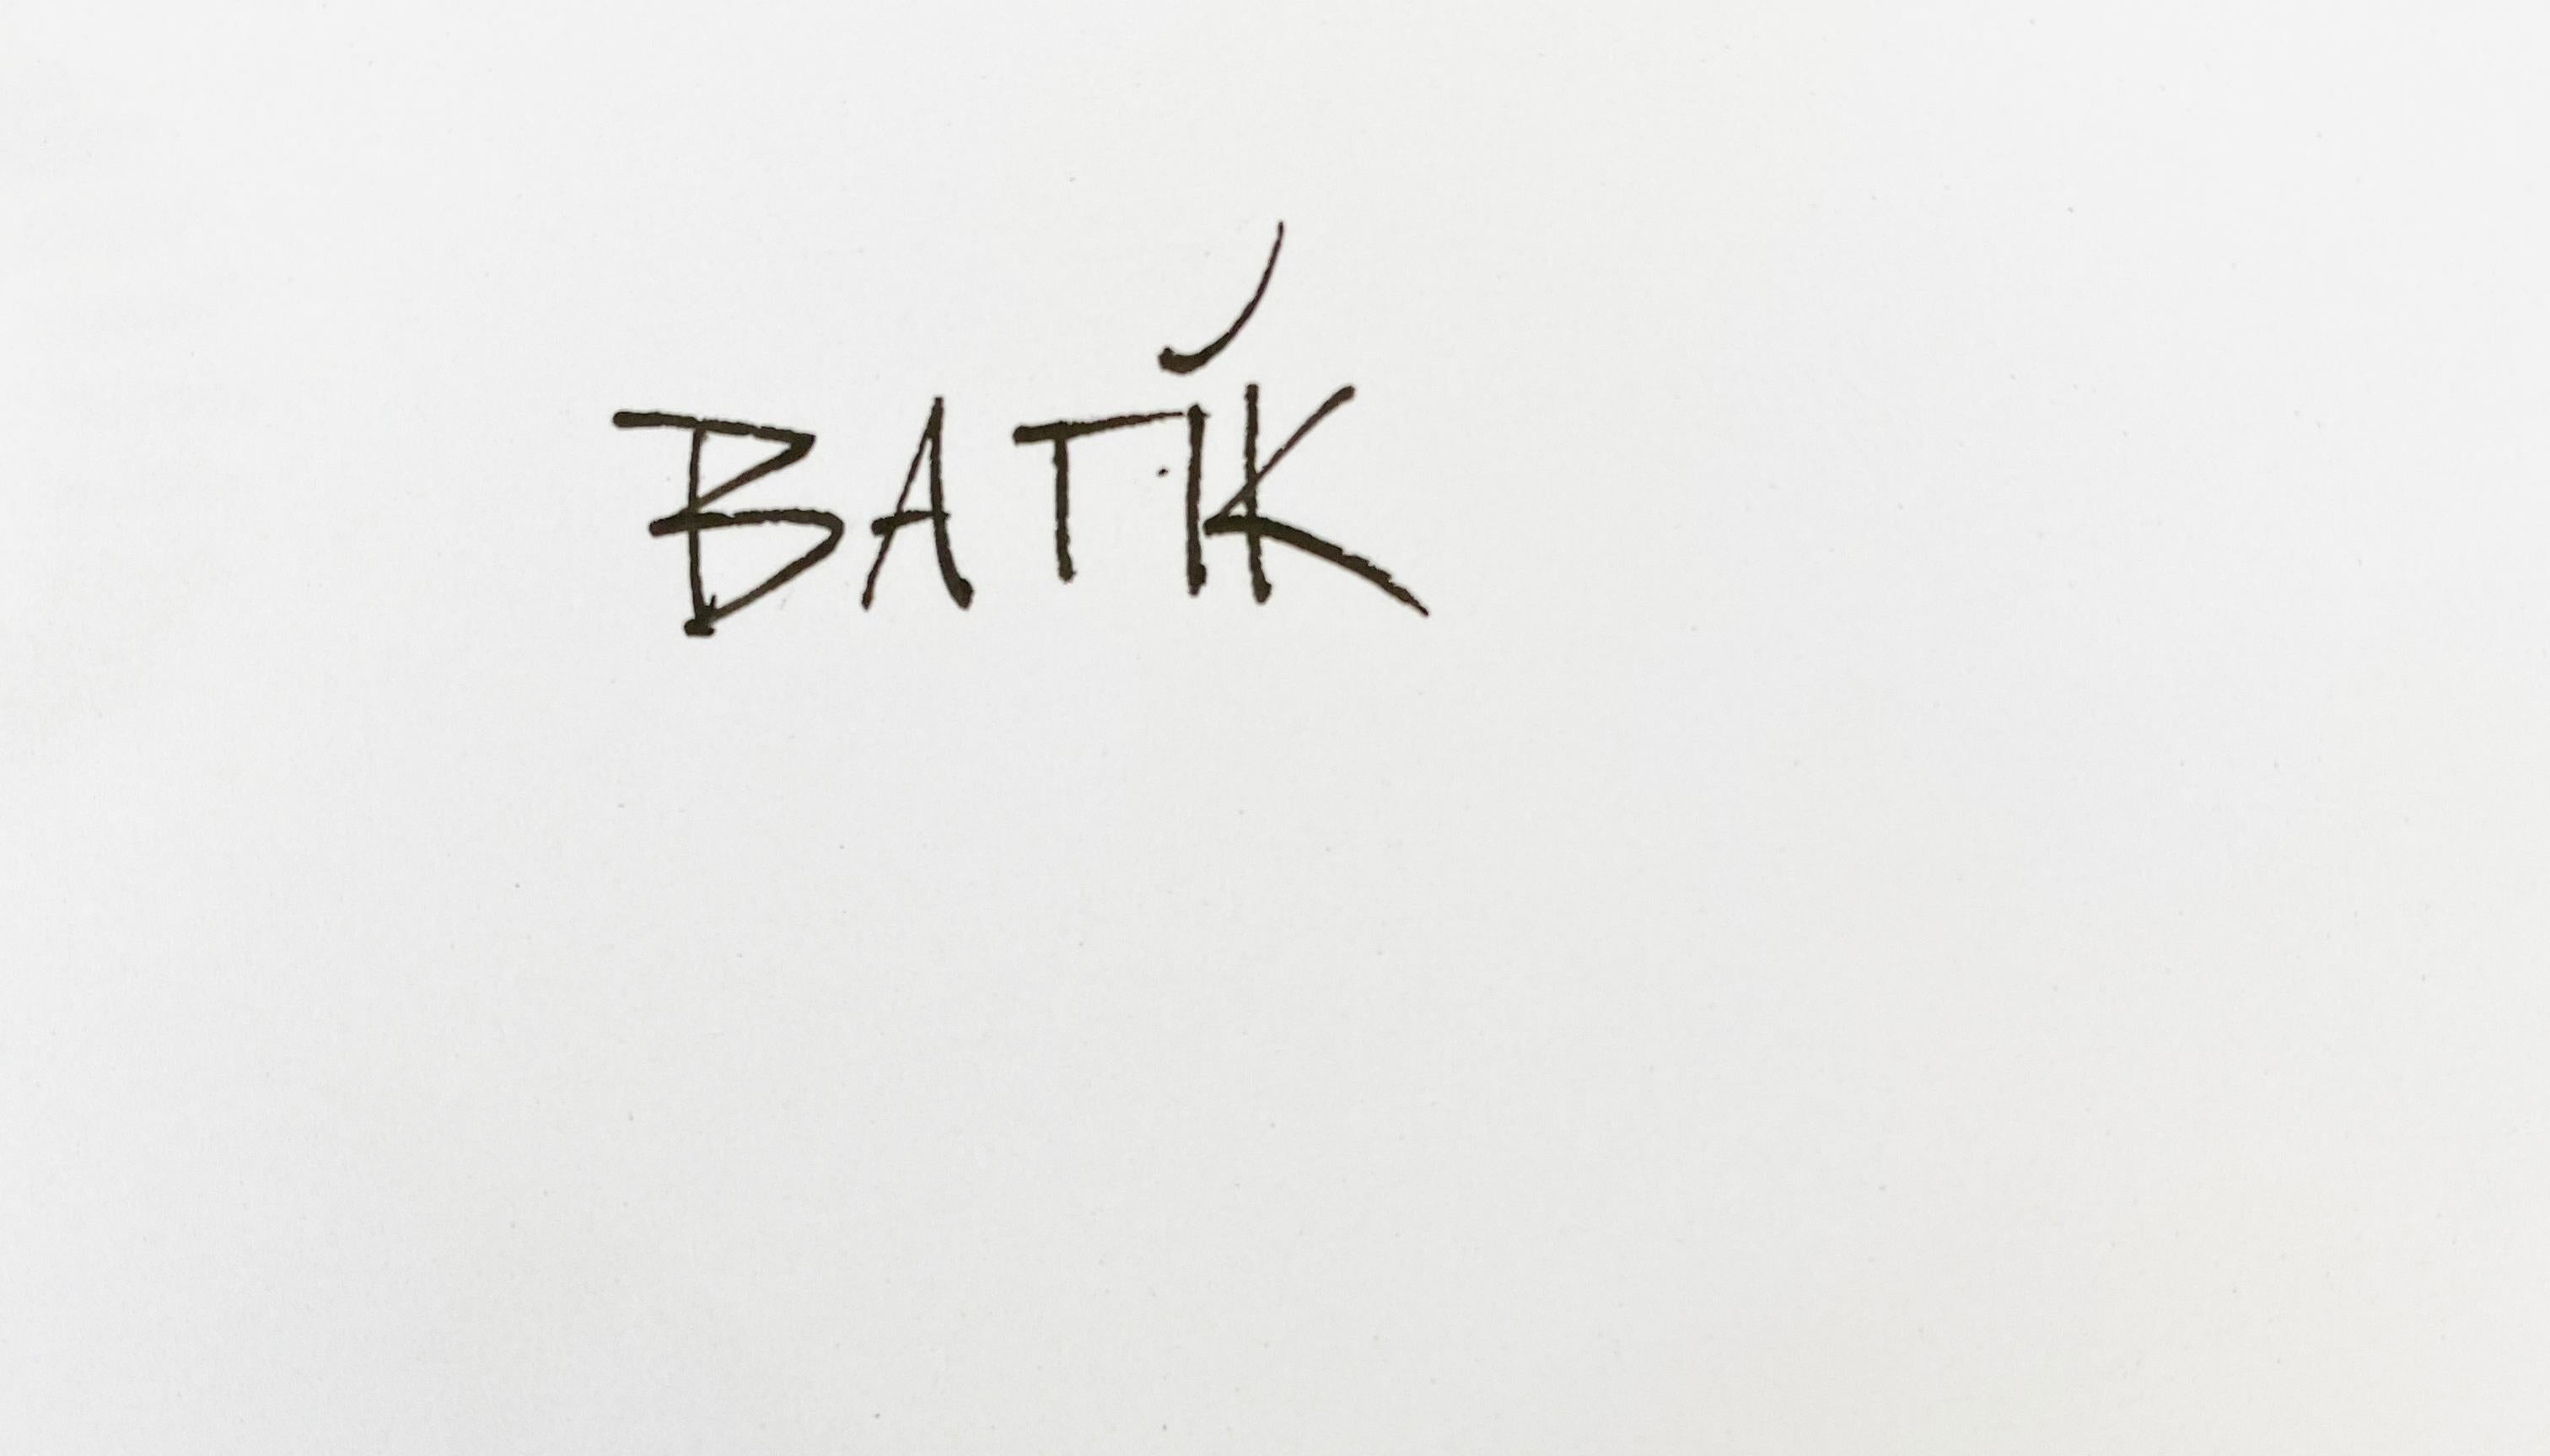 Ohh Baby!  - Übergröße Signiert Limitierte Auflage - Pop Art - Kate Moss

der in London ansässigen zeitgenössischen Pop-Art
bildschöpfer und Künstler, BATIK.

Maßnahmen  30 x 20